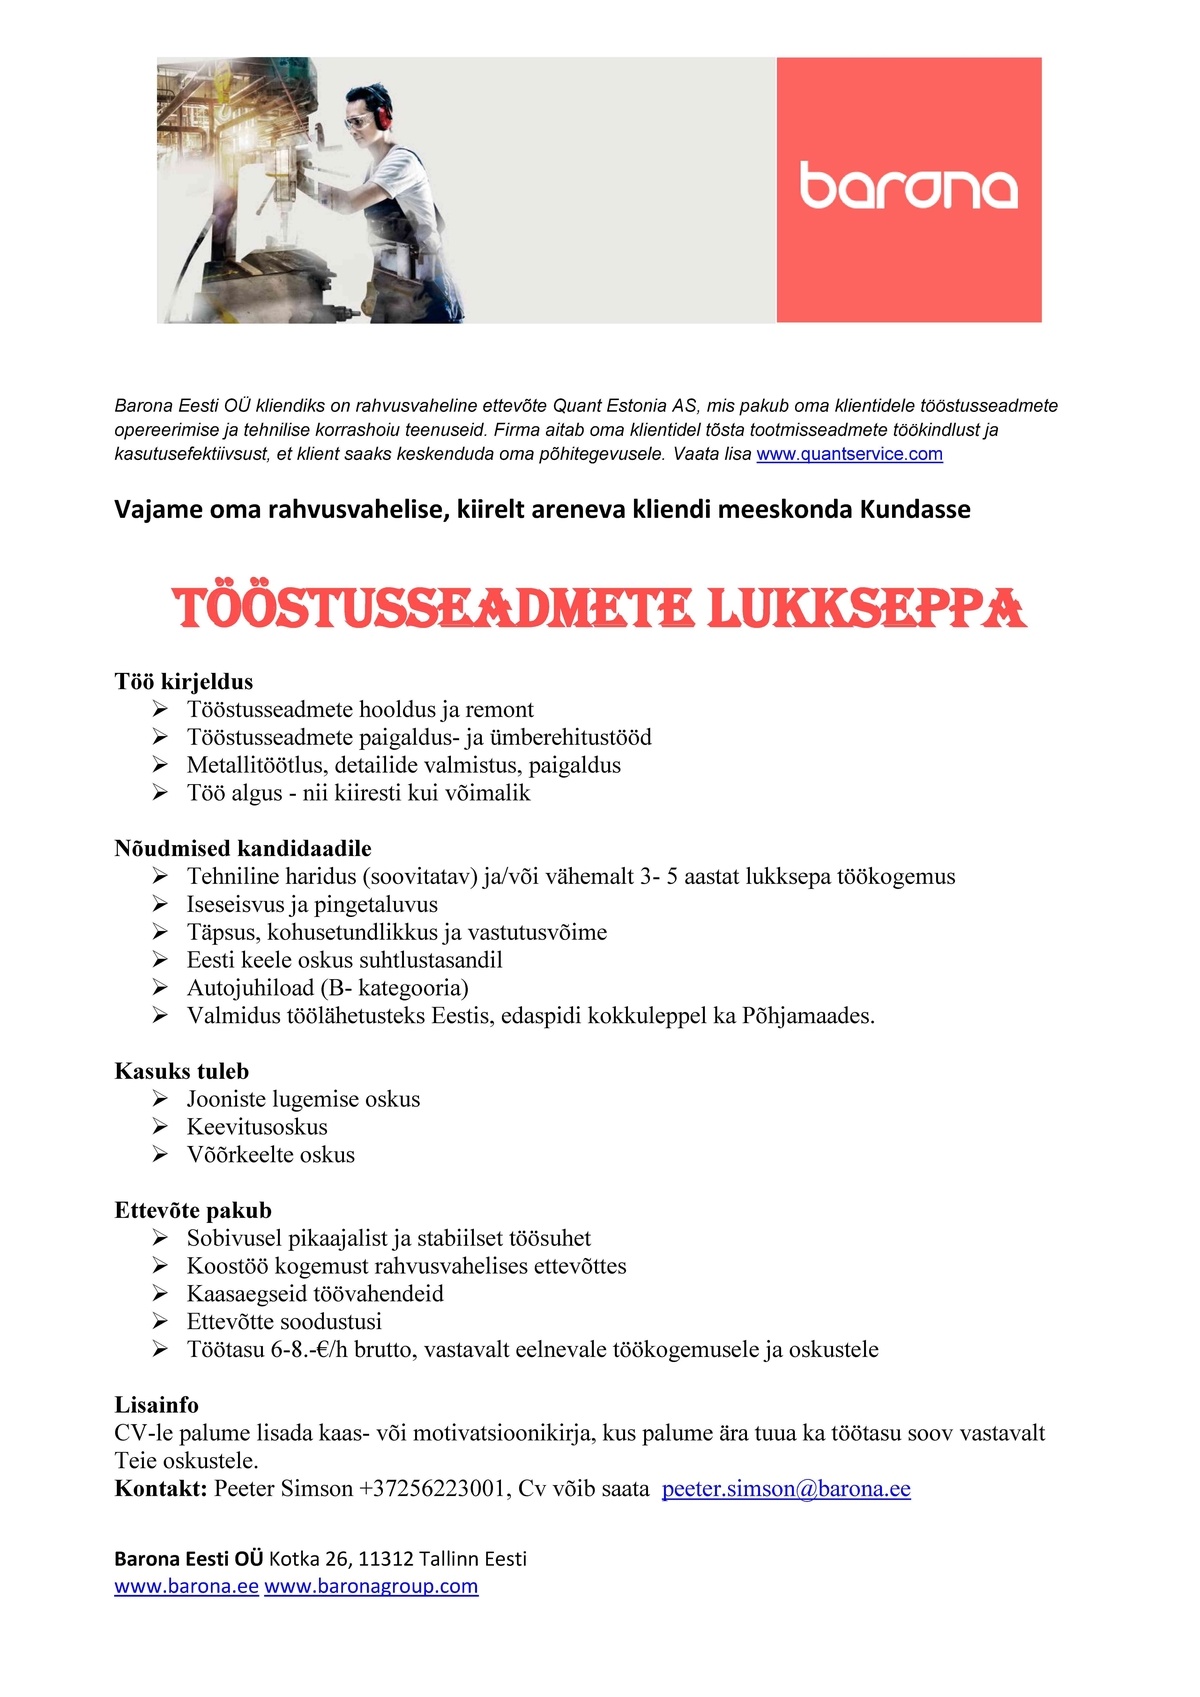 Barona Eesti OÜ Kiiresti tööstusseadmete lukksepp, Kundasse